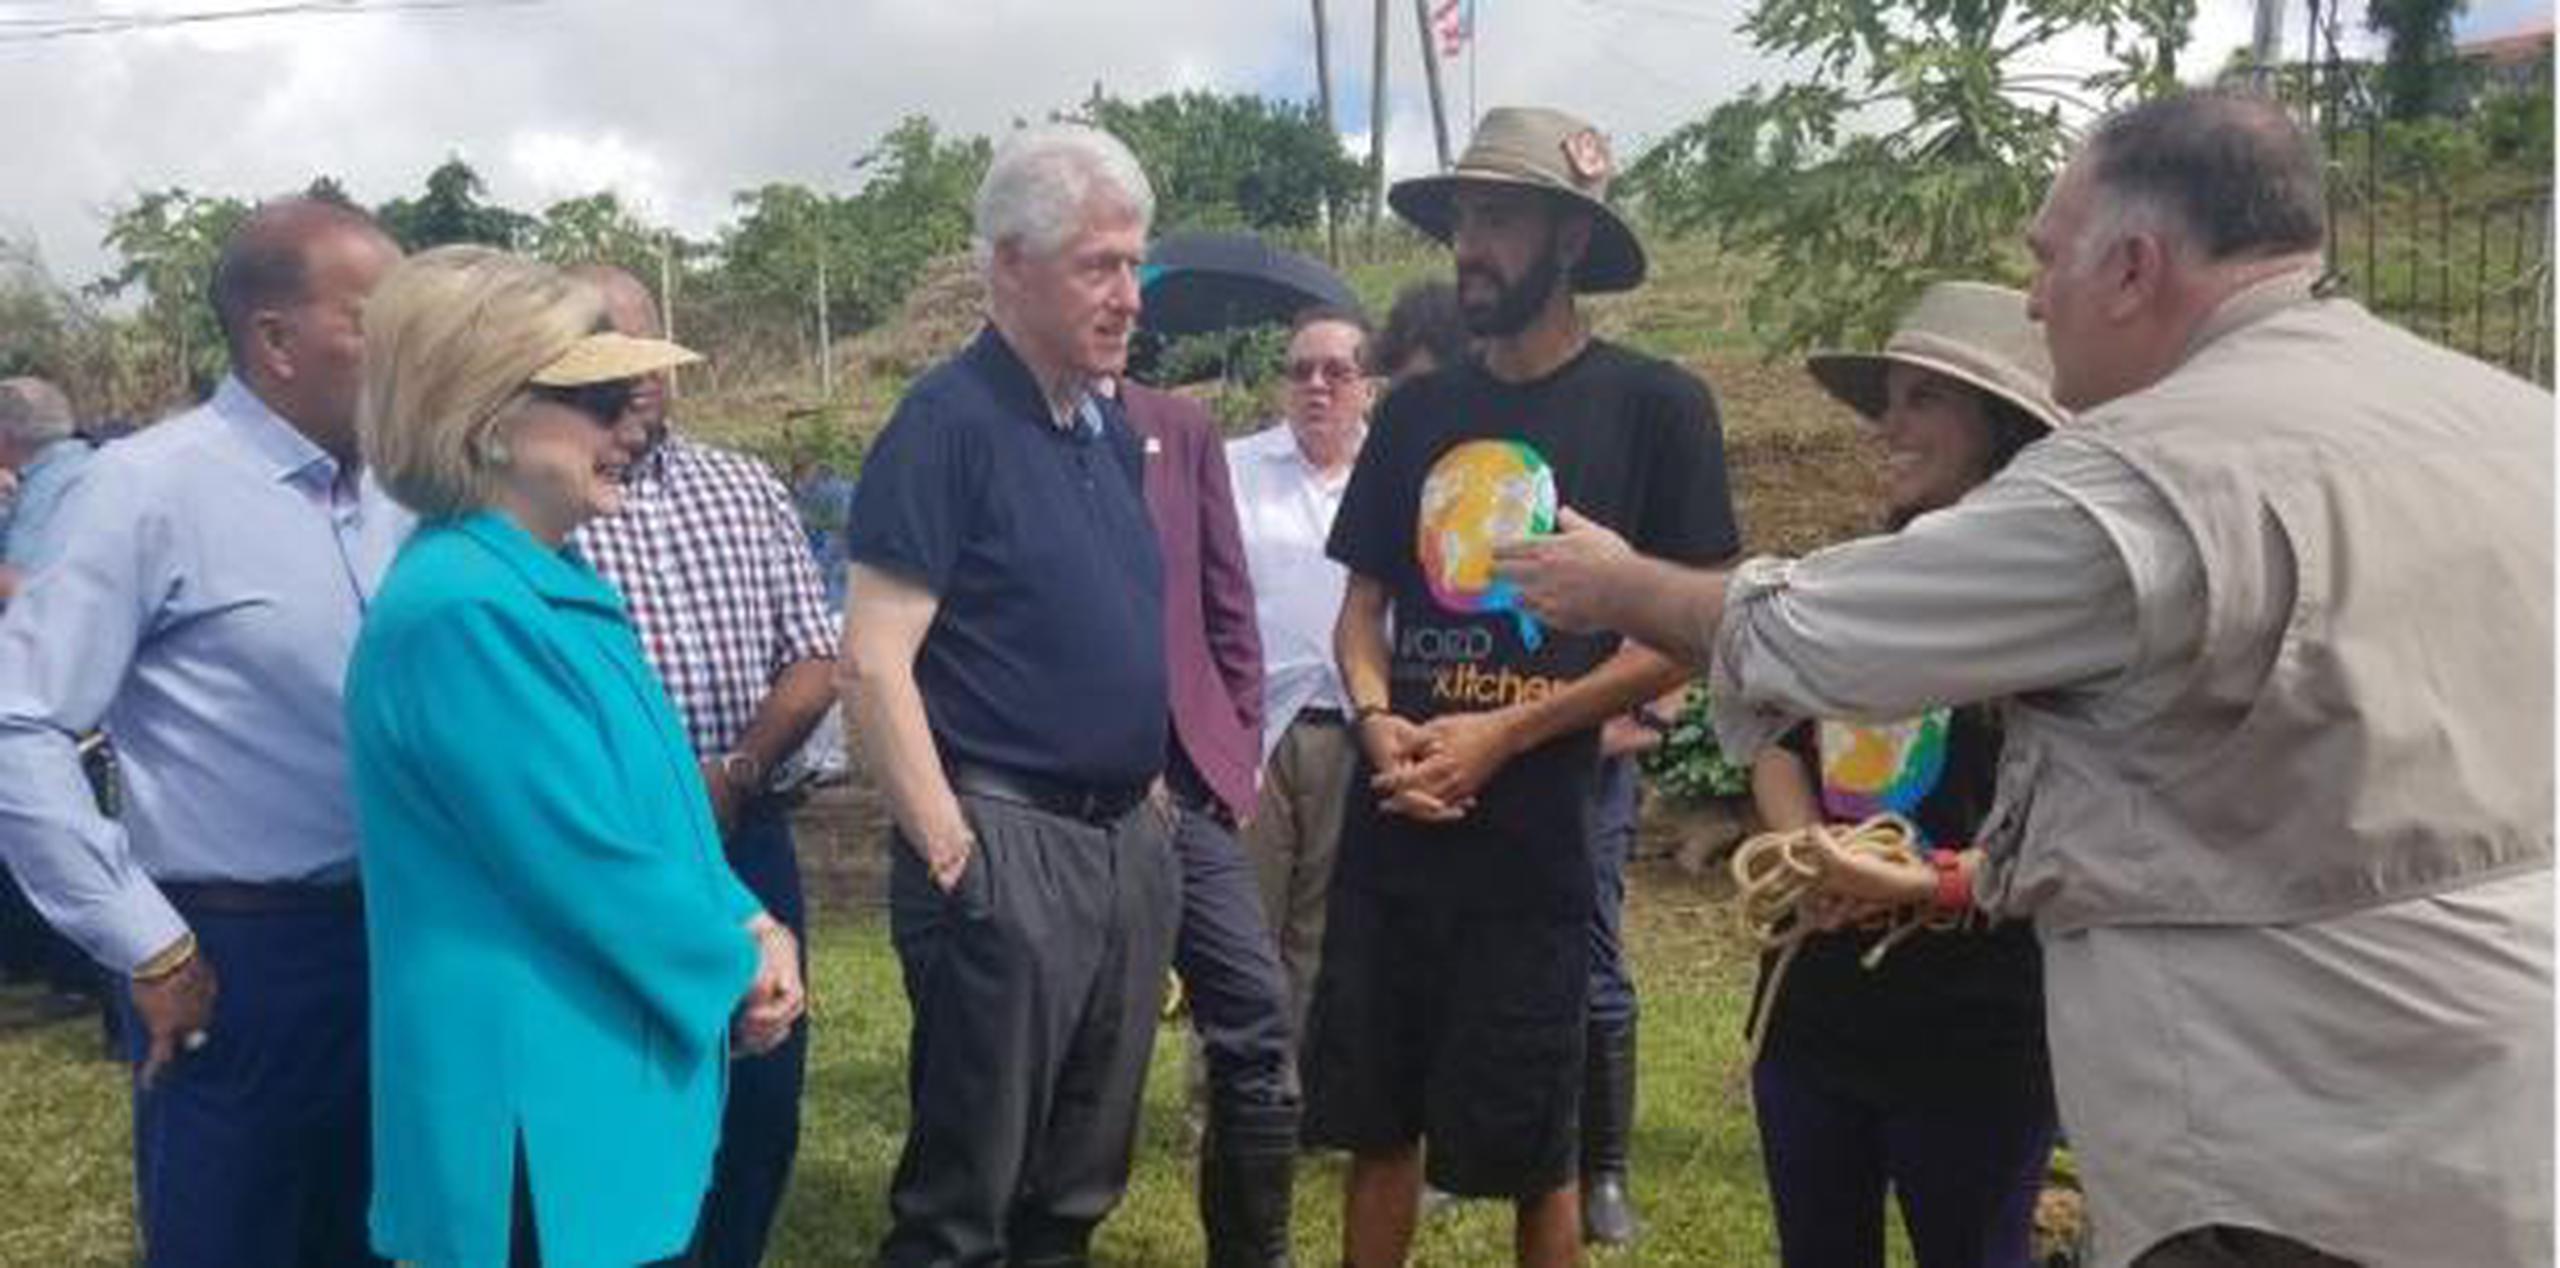 El alcalde de Las Piedras, Miguel López, también destacó la importancia de la visita de los Clinton a su pueblo. (teresa.canino@gfrmedia.com)